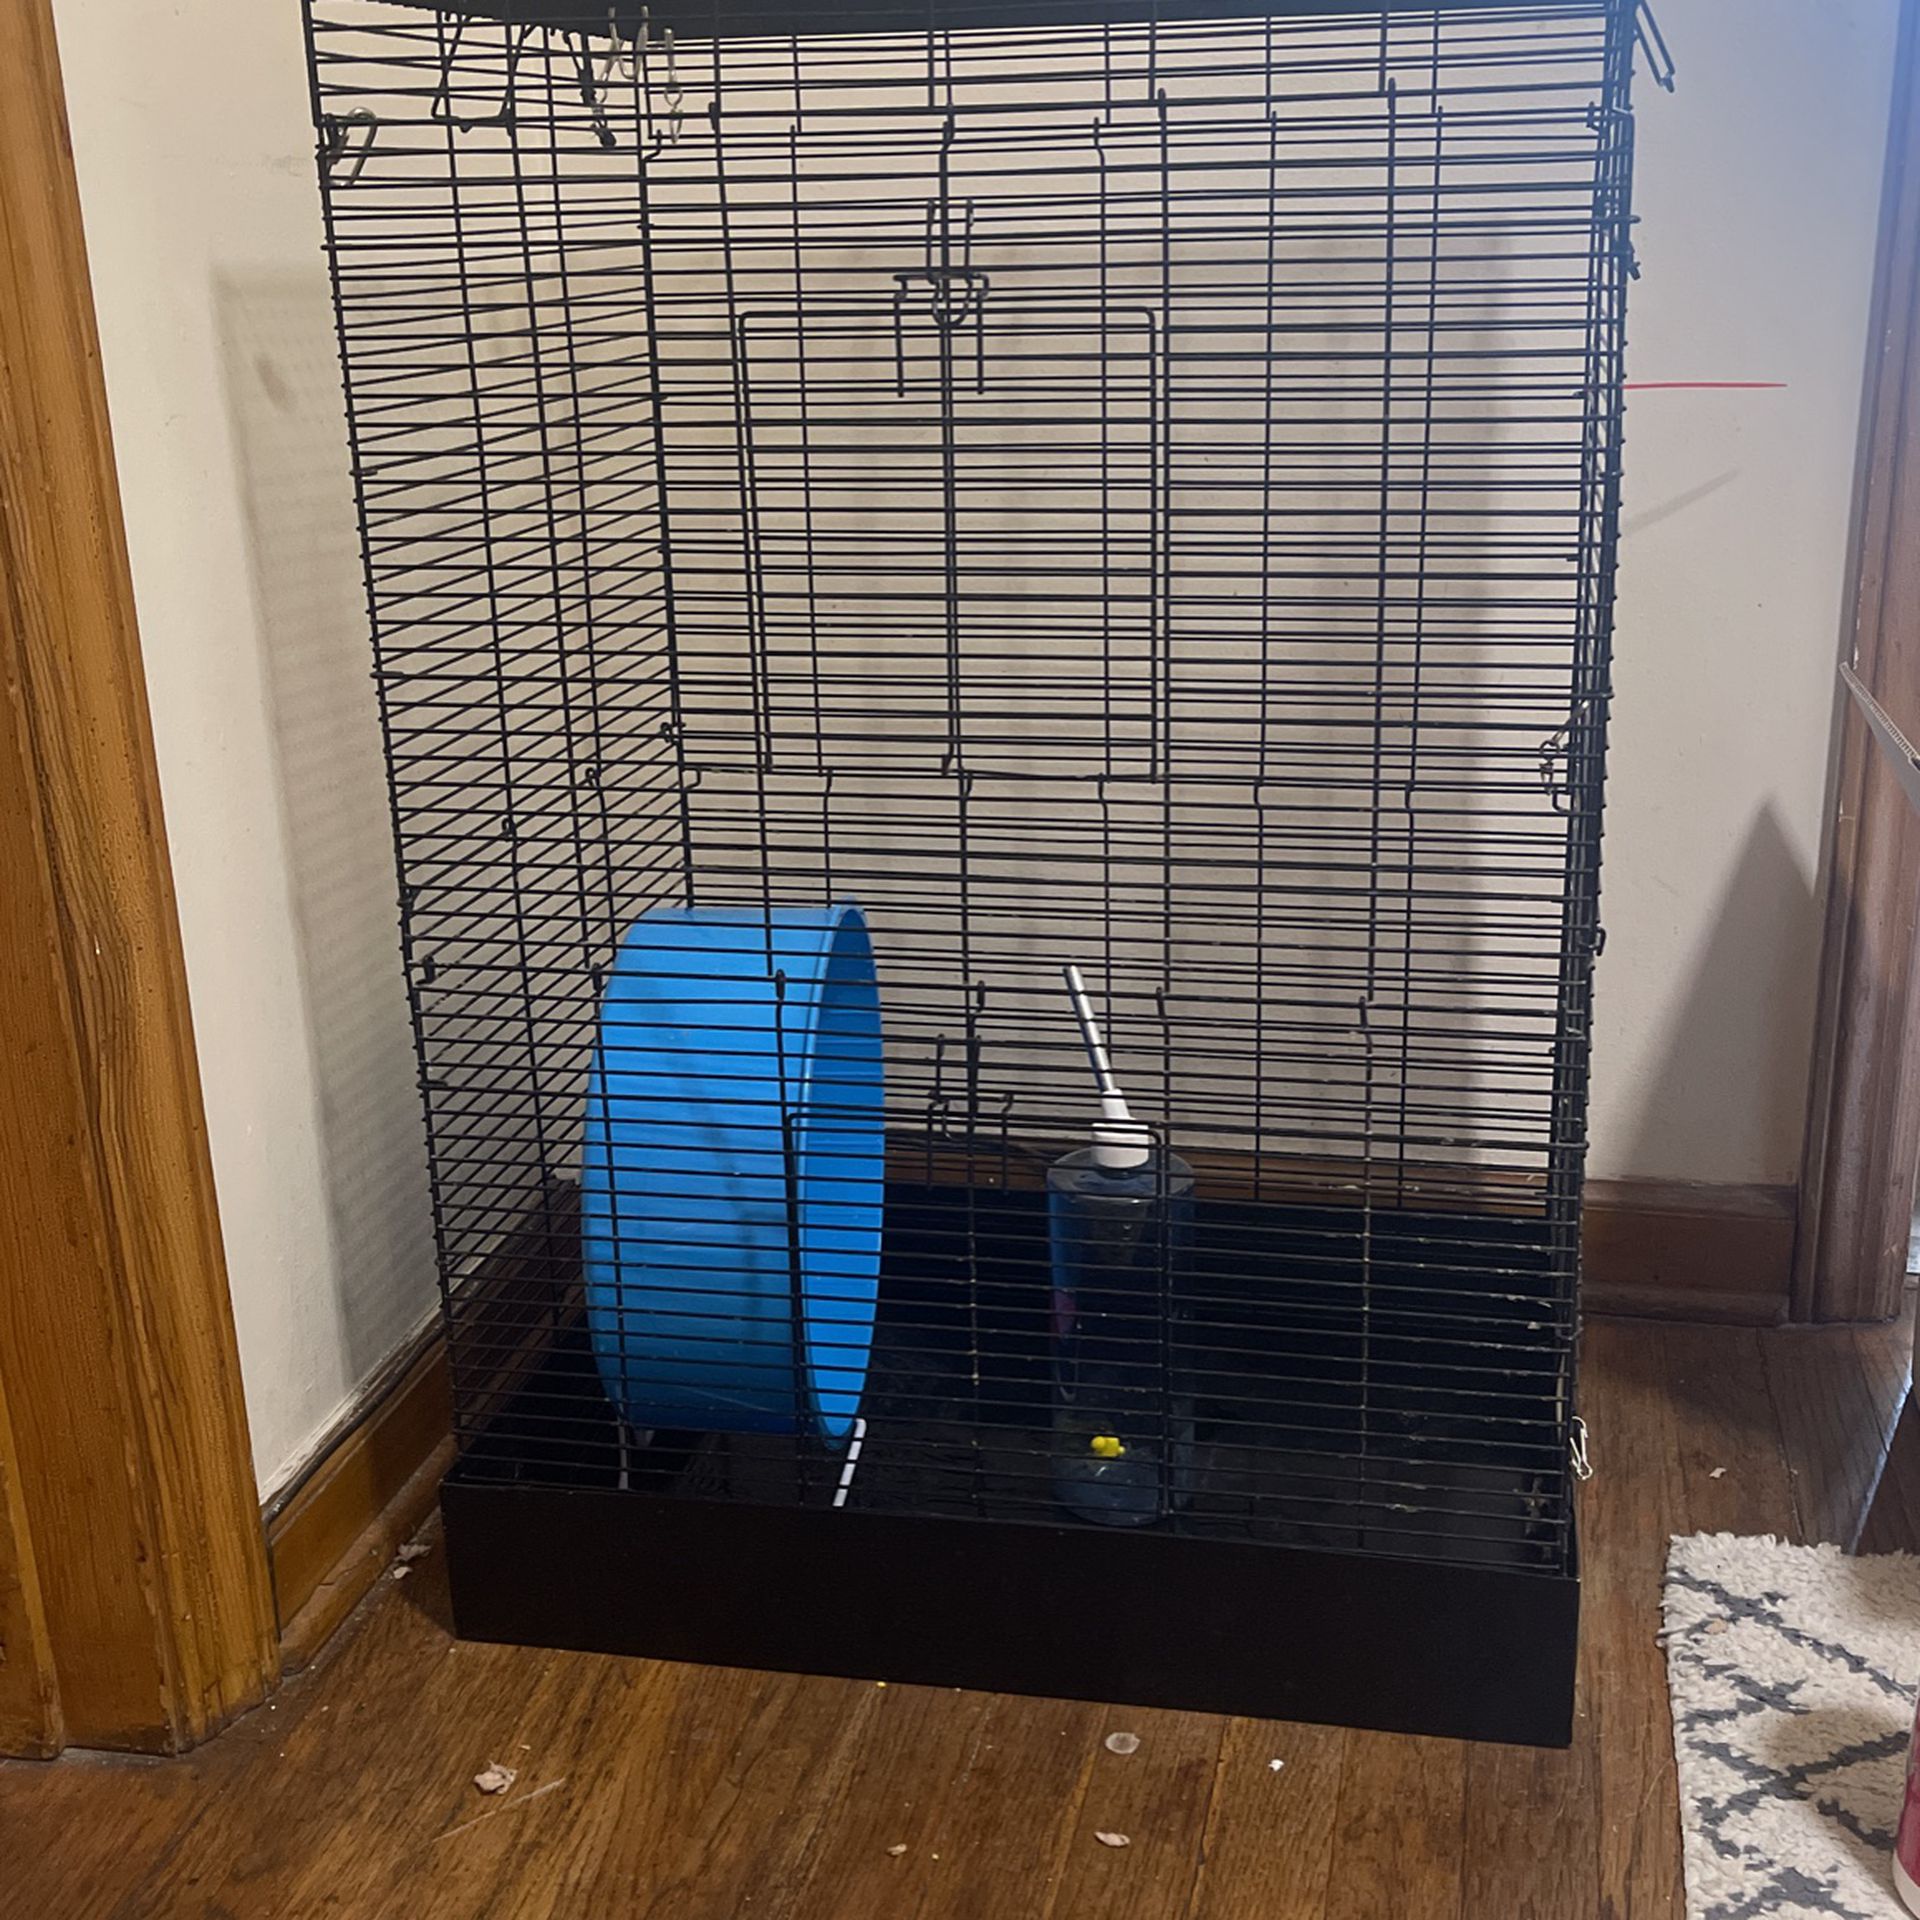 Rat Cage Plus Accessories